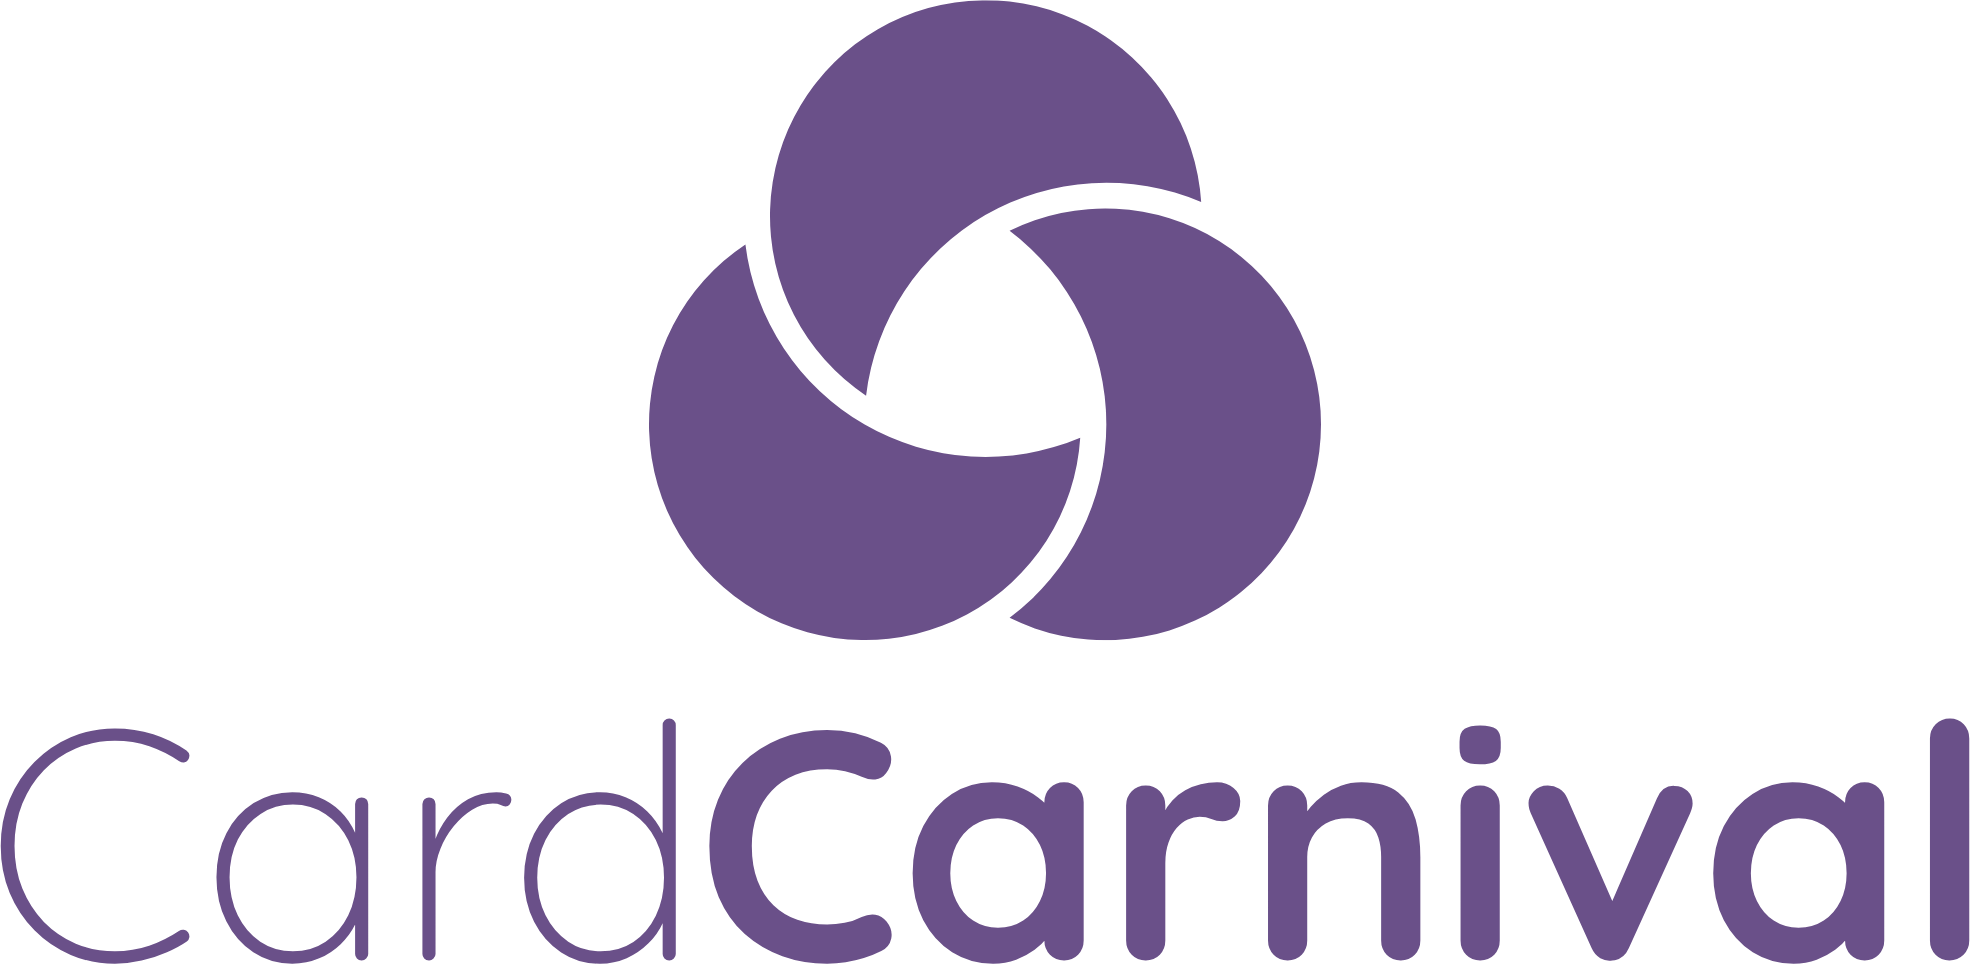 Card Carnival Logo, cardcarnival.net